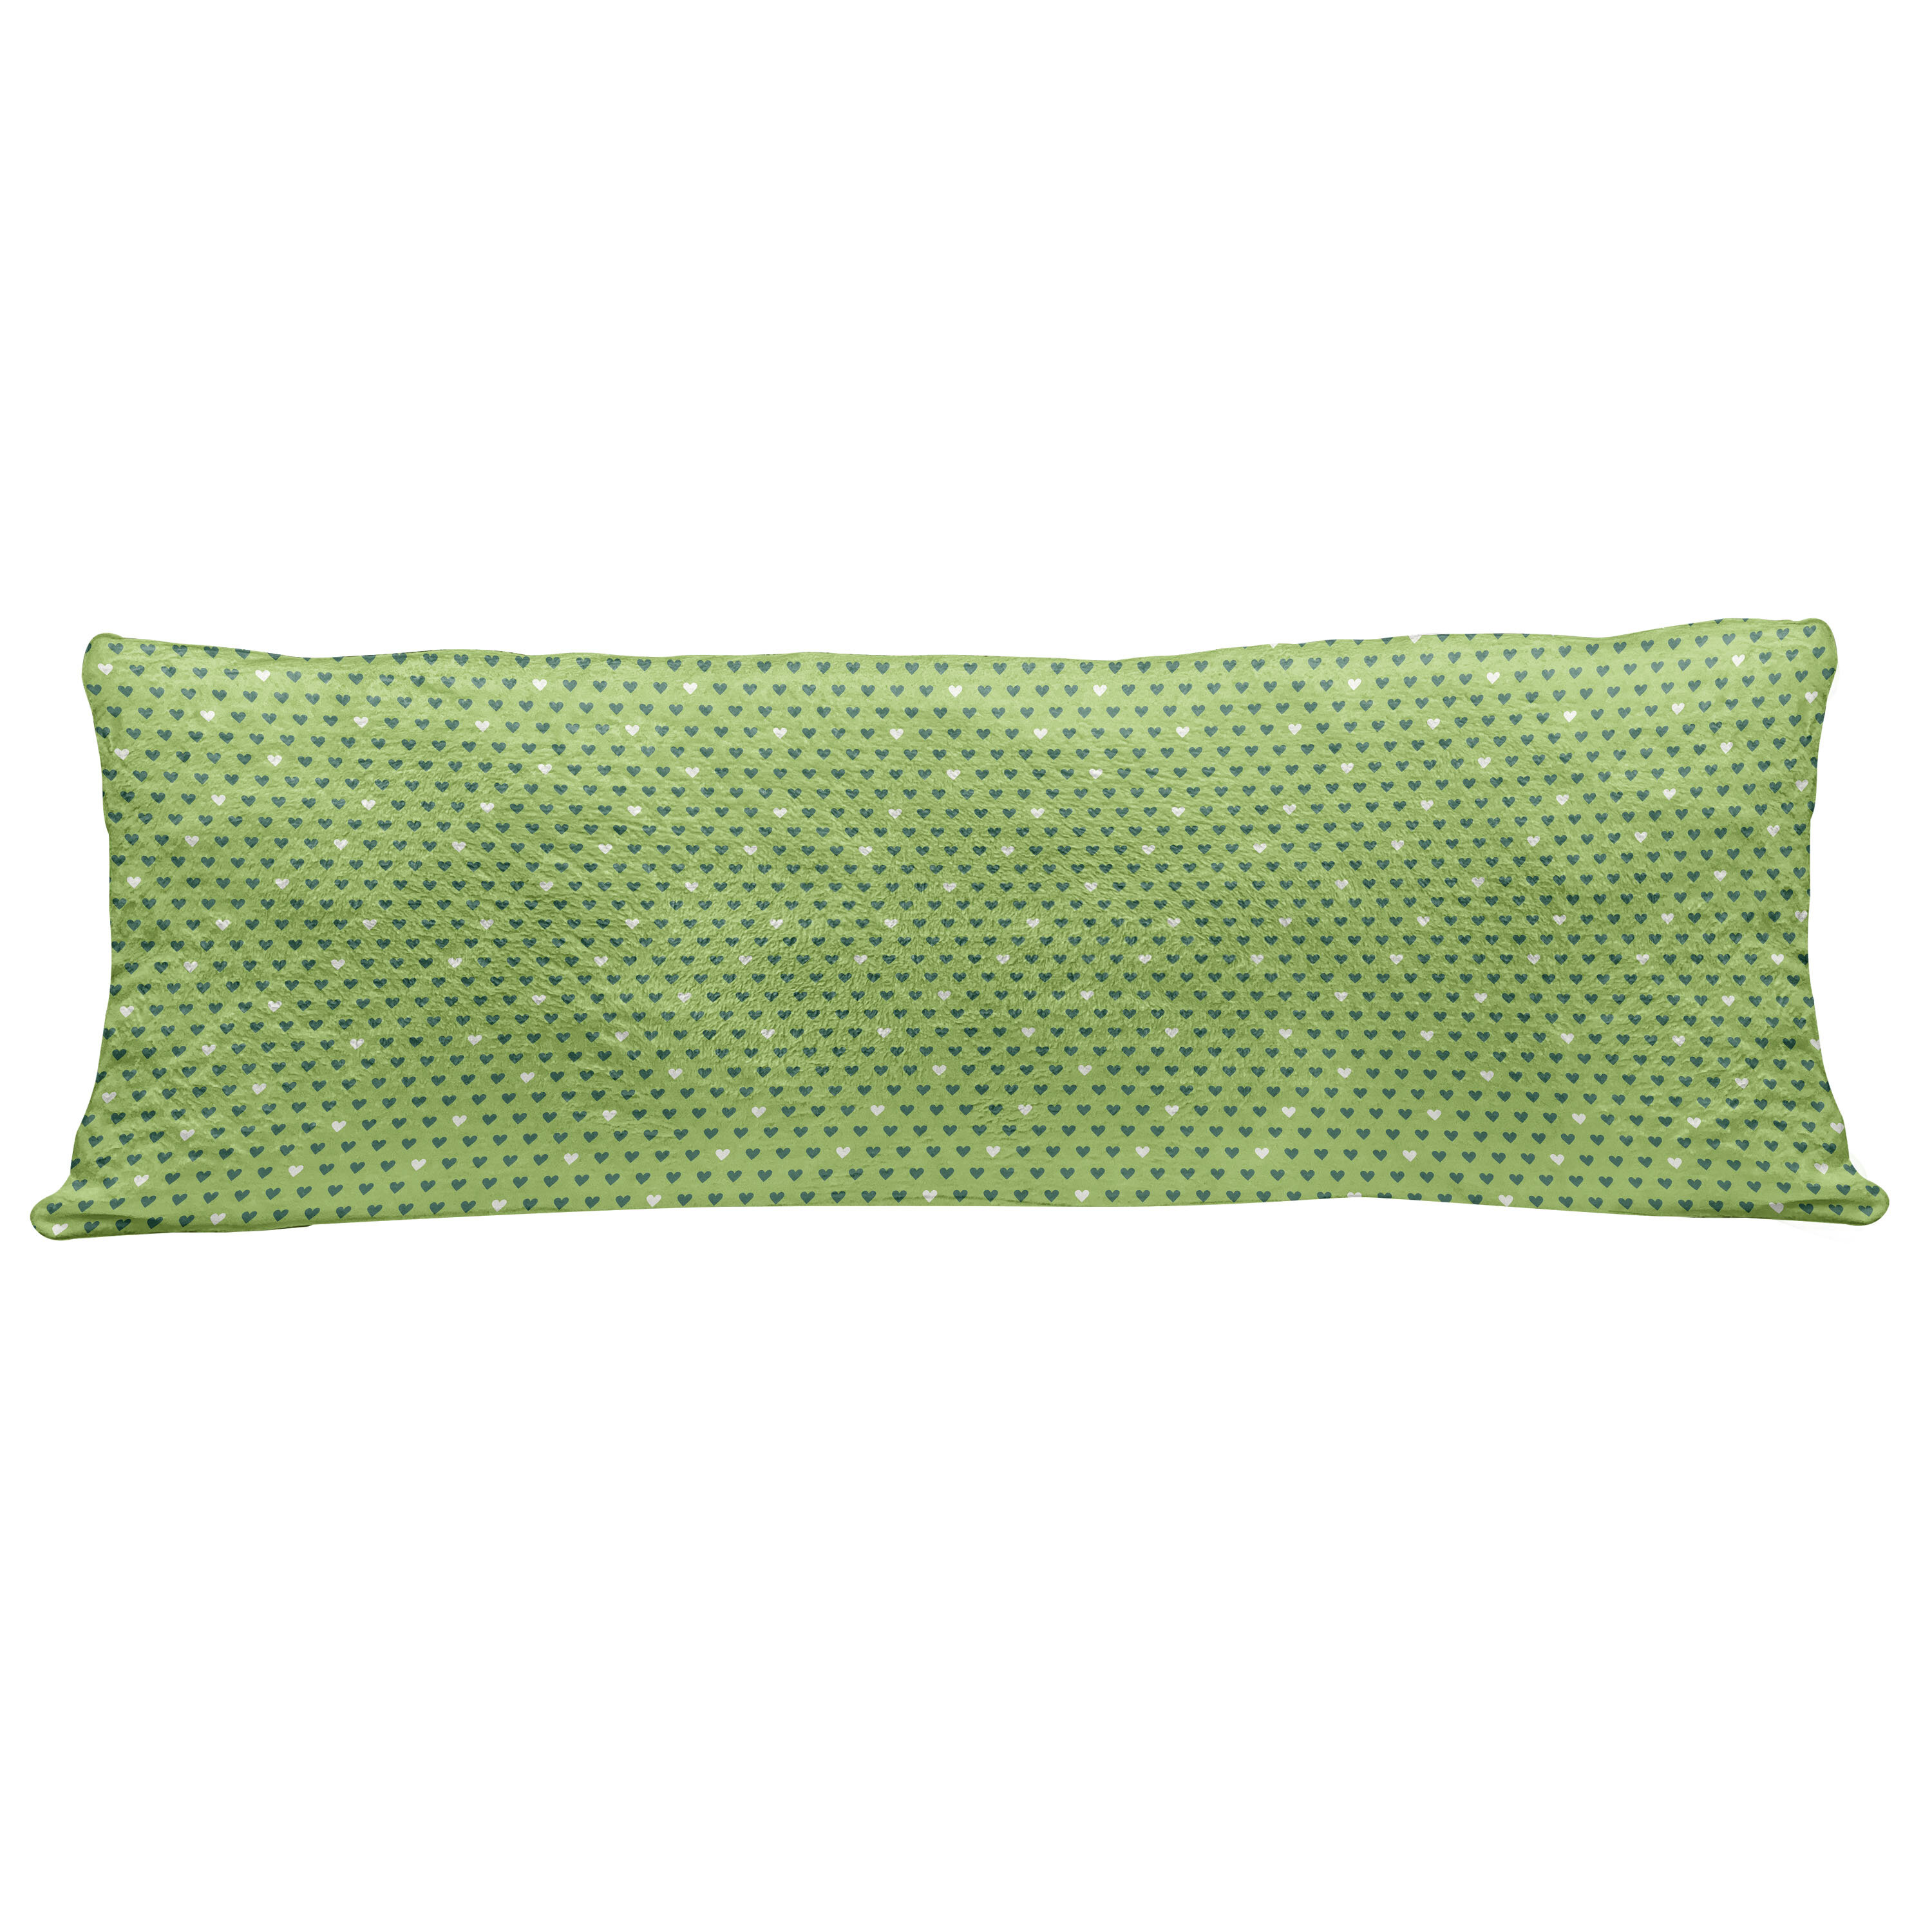 pillow with the zipper decorative pillow green pillow cover,green pillow,pillow cover throw pillow pillowcase pillow design